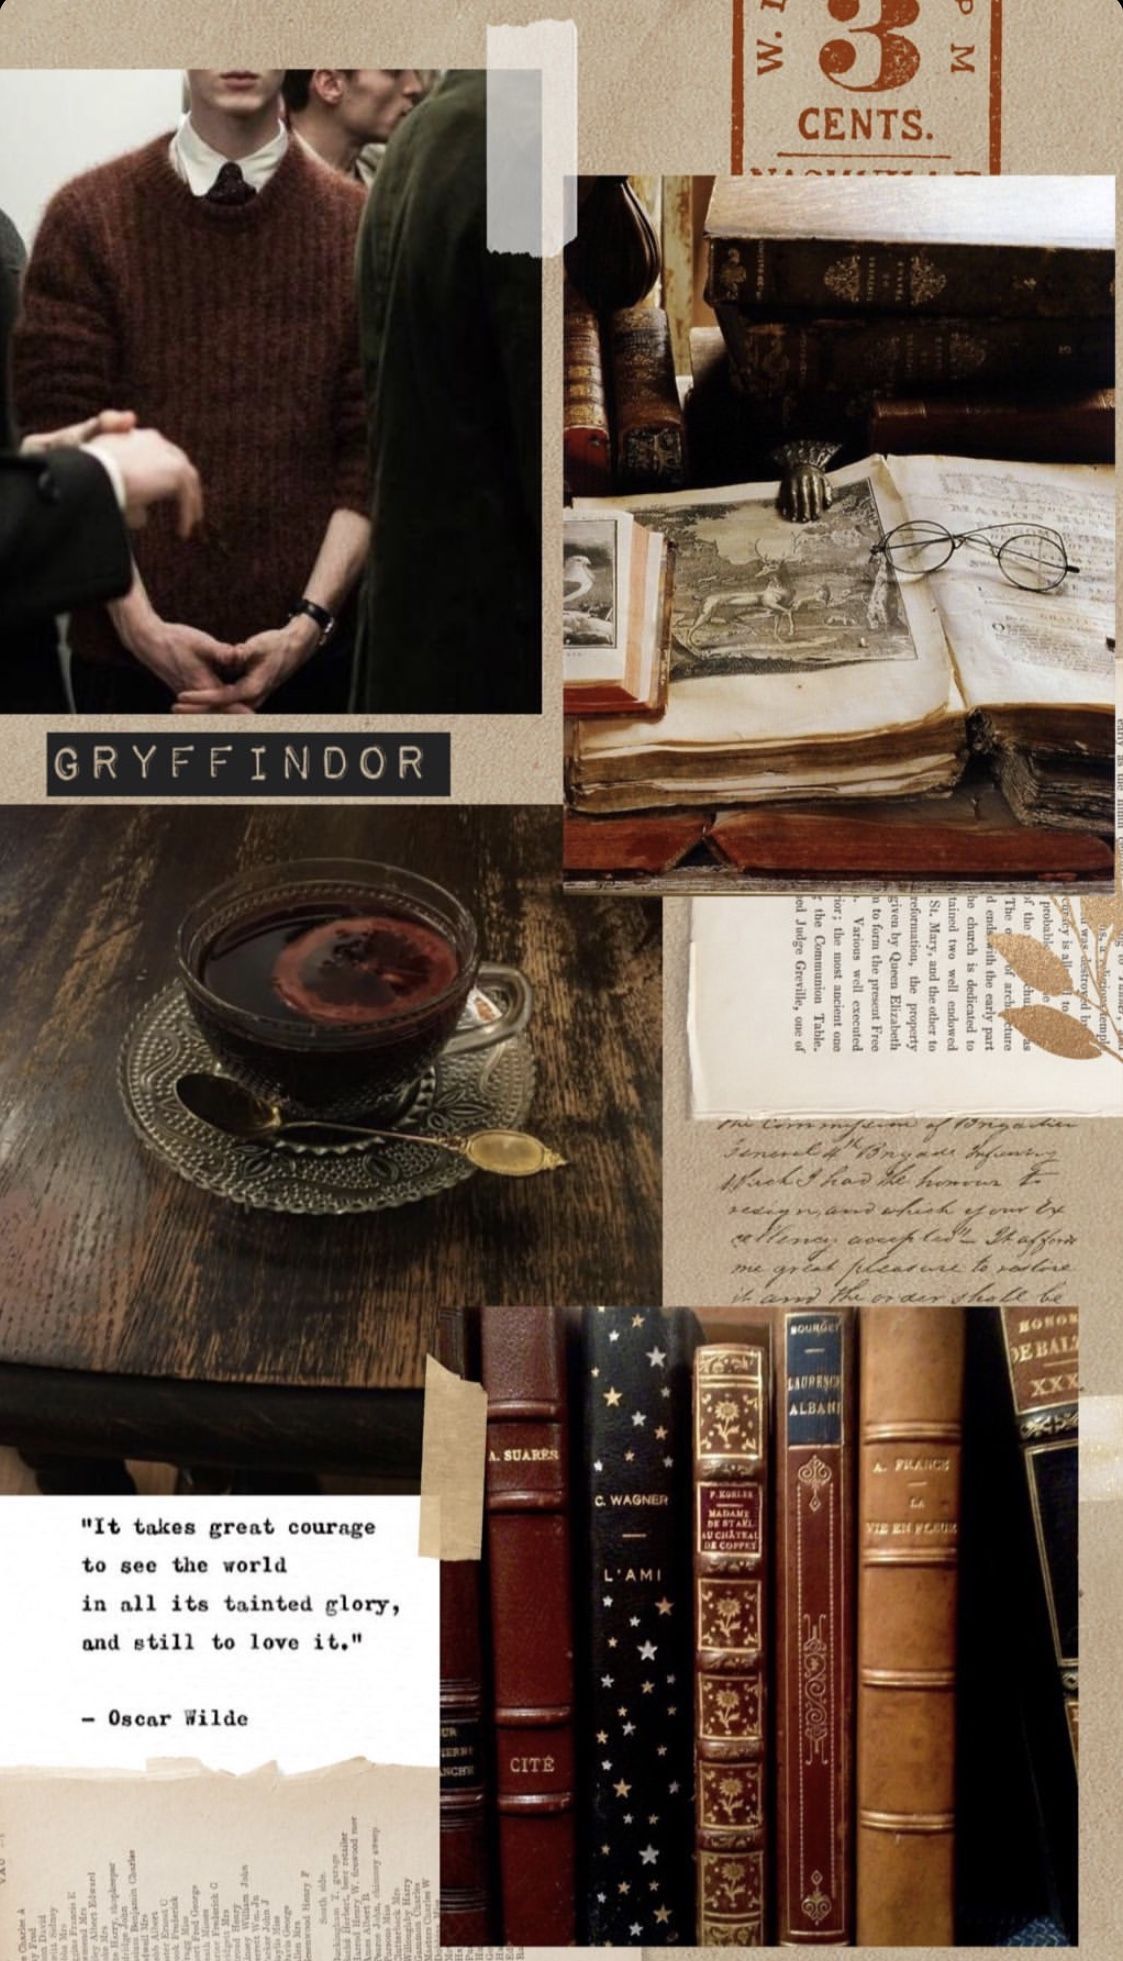 Gryffindor. Harry potter wallpaper, Harry potter aesthetic, Gryffindor